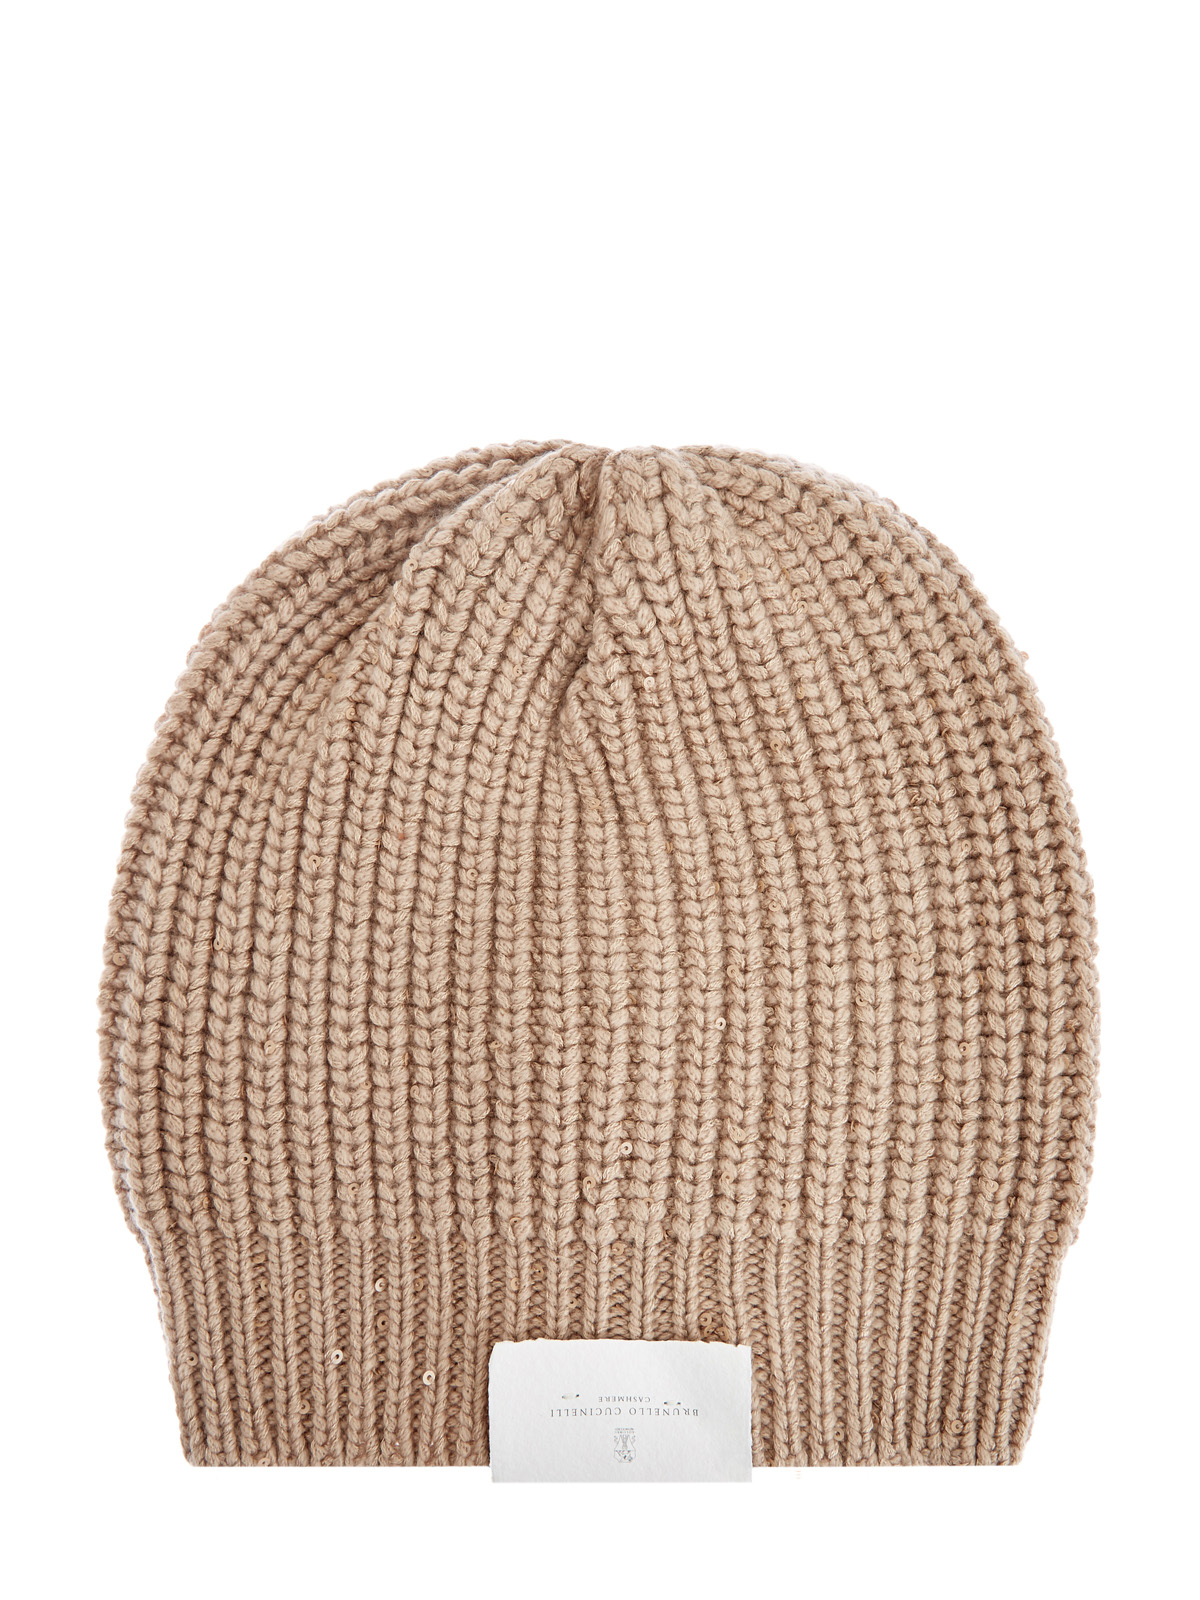 Кашемировая шапка с добавлением шелка Diamante и пайетками BRUNELLO CUCINELLI, цвет коричневый, размер S;M